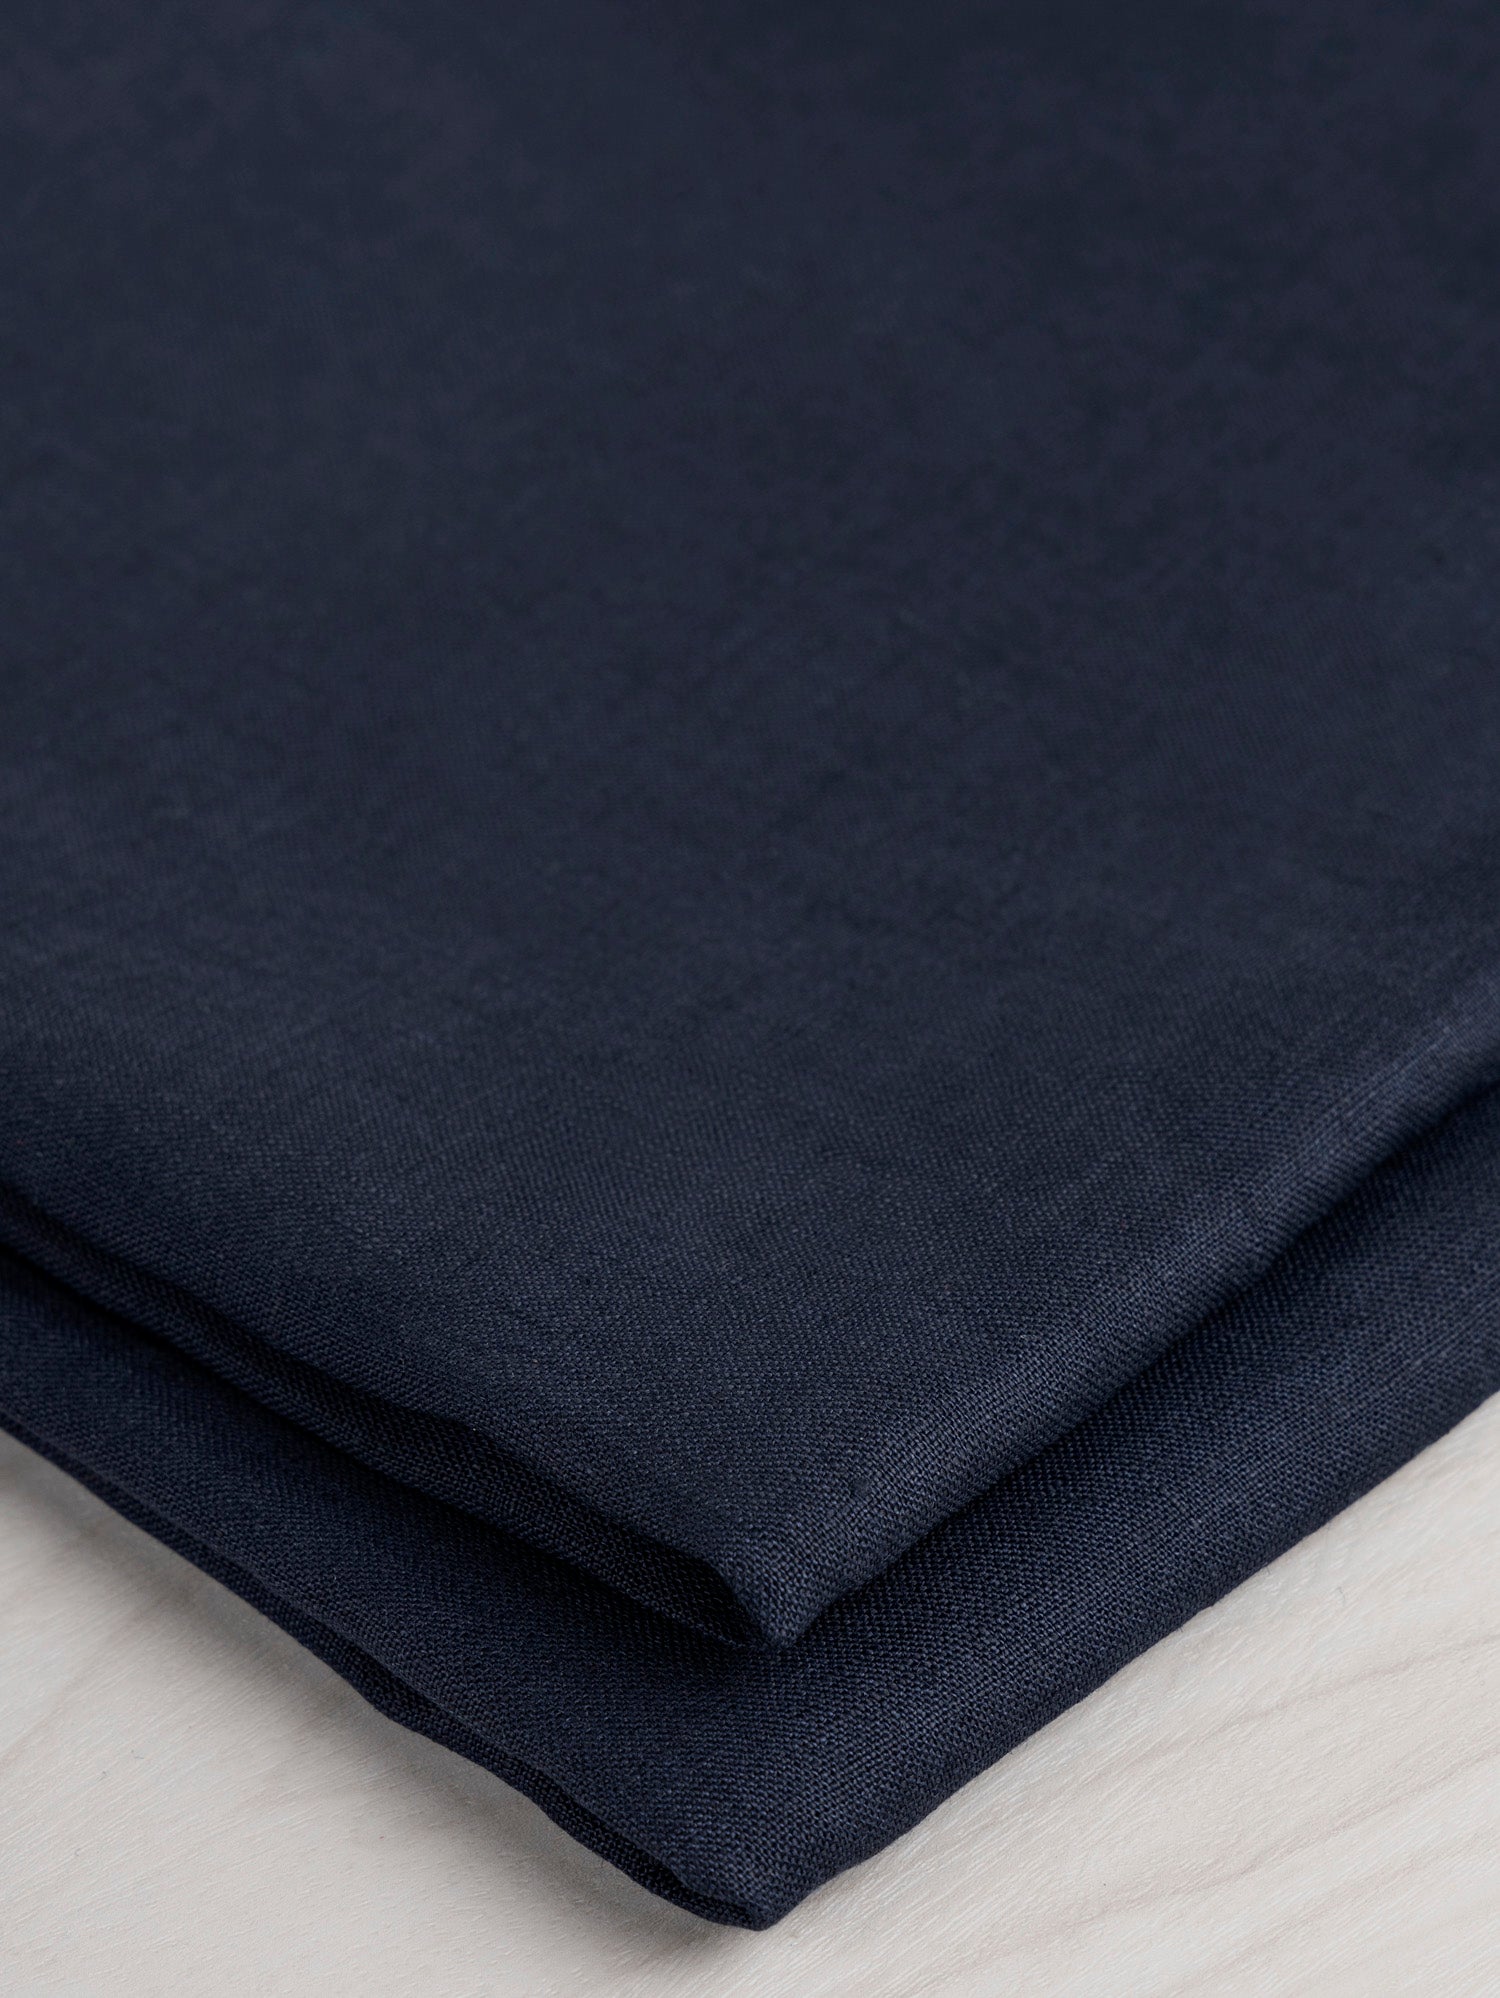 Lightweight European Linen - Dark Navy | Core Fabrics